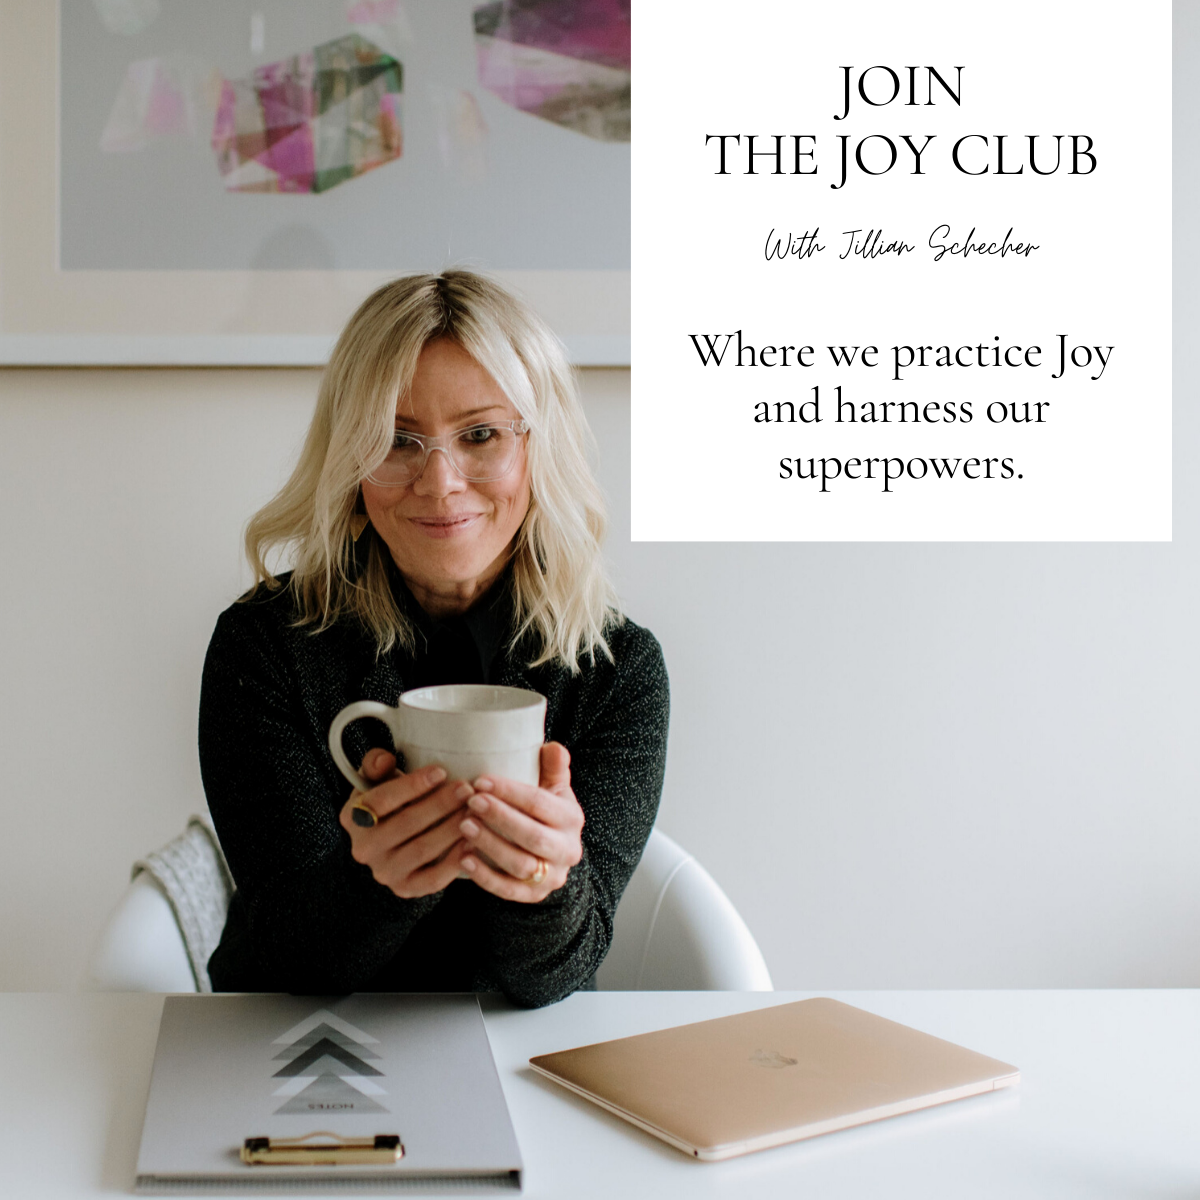 Join The Joy Club With Jillian Schecher